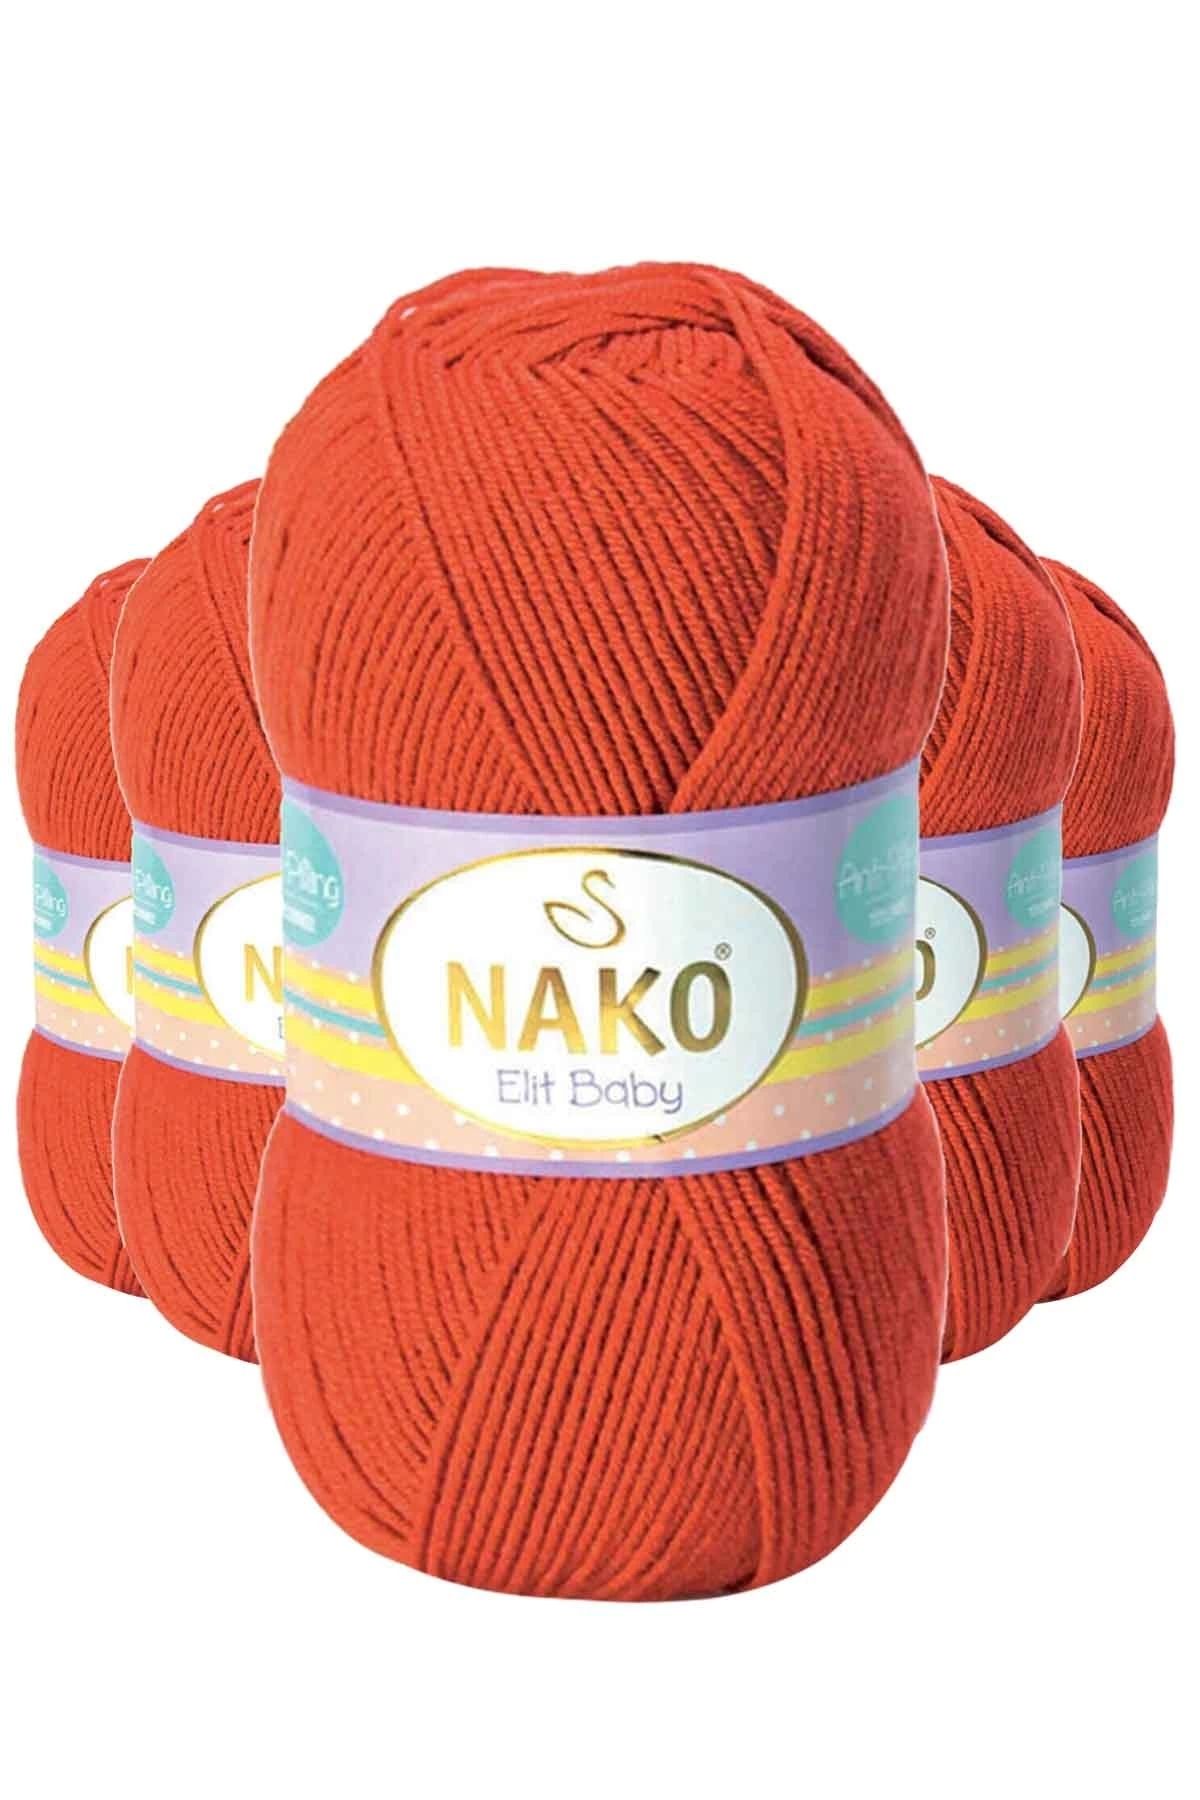 Nako 5 Adet Elite Baby El Örgü Ipi Tüylenmeyen Bebek Yünü Mercan Taşı 10701